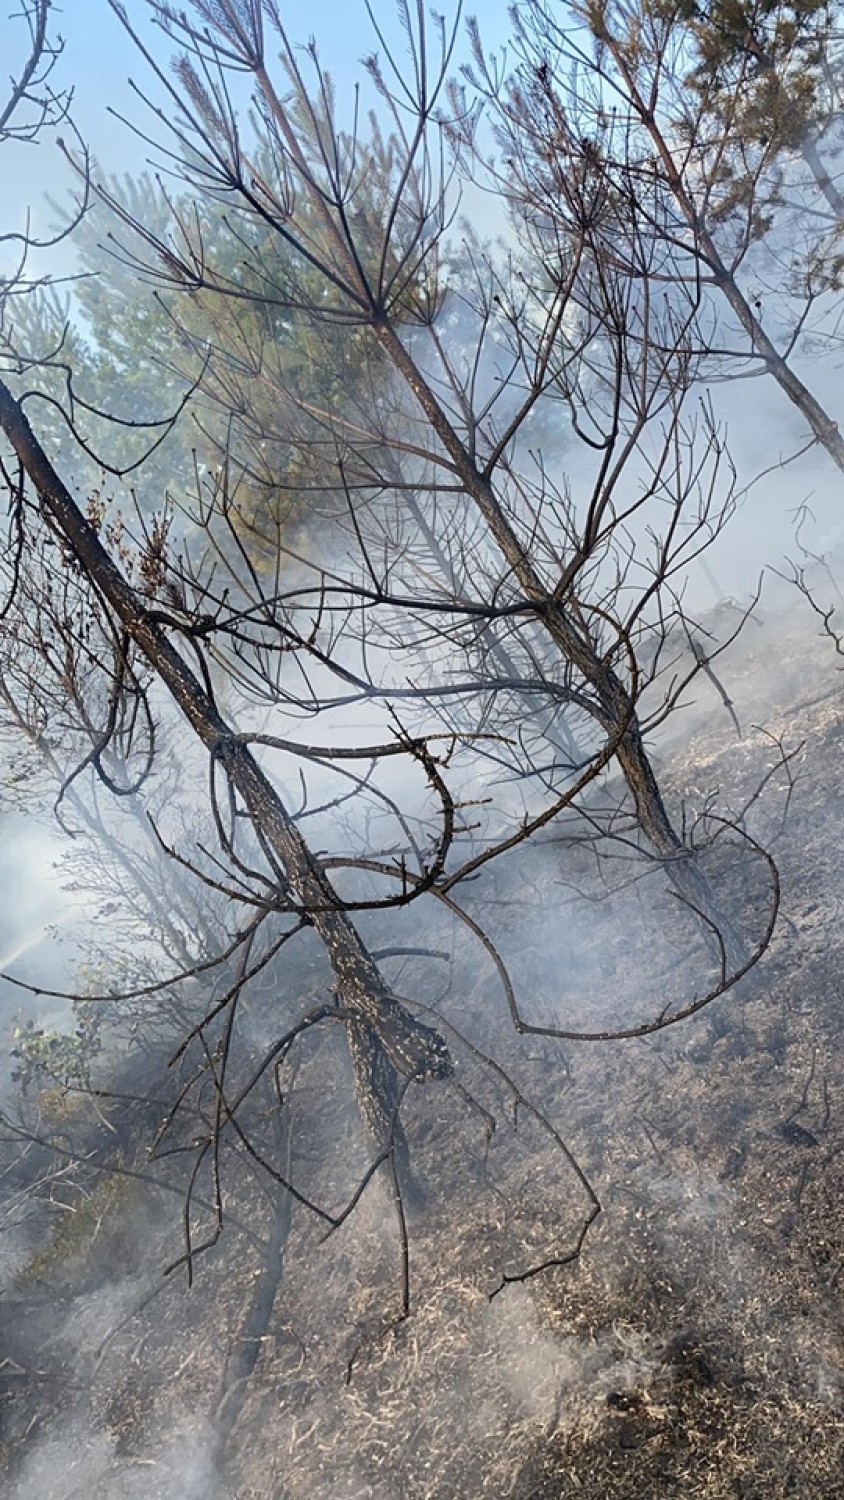 Ochotnicy gasili las między Chełstowem a Ostrowiną